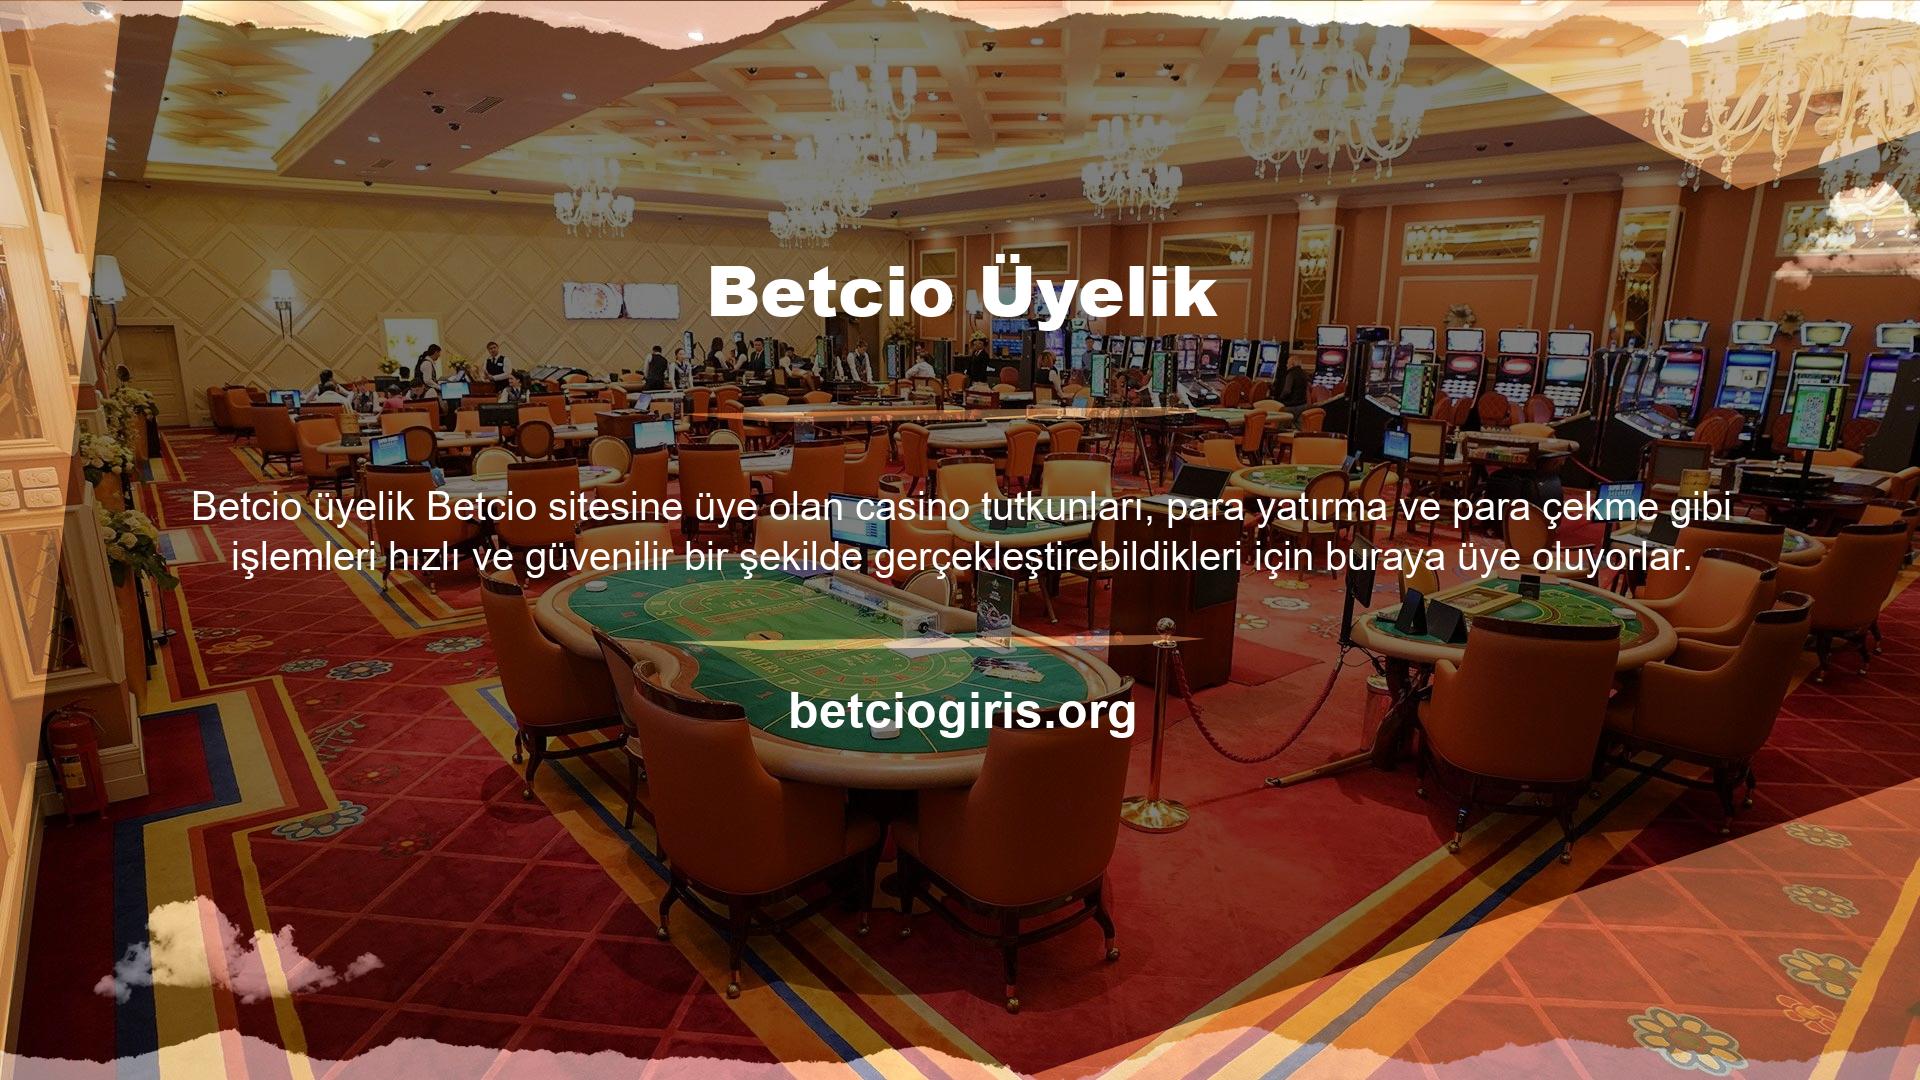 Betcio web sitesi üzerinden para çekme gibi işlemler yapmak isteyenler, işlemlerini güvenilir ve sorunsuz bir şekilde gerçekleştirebilirler